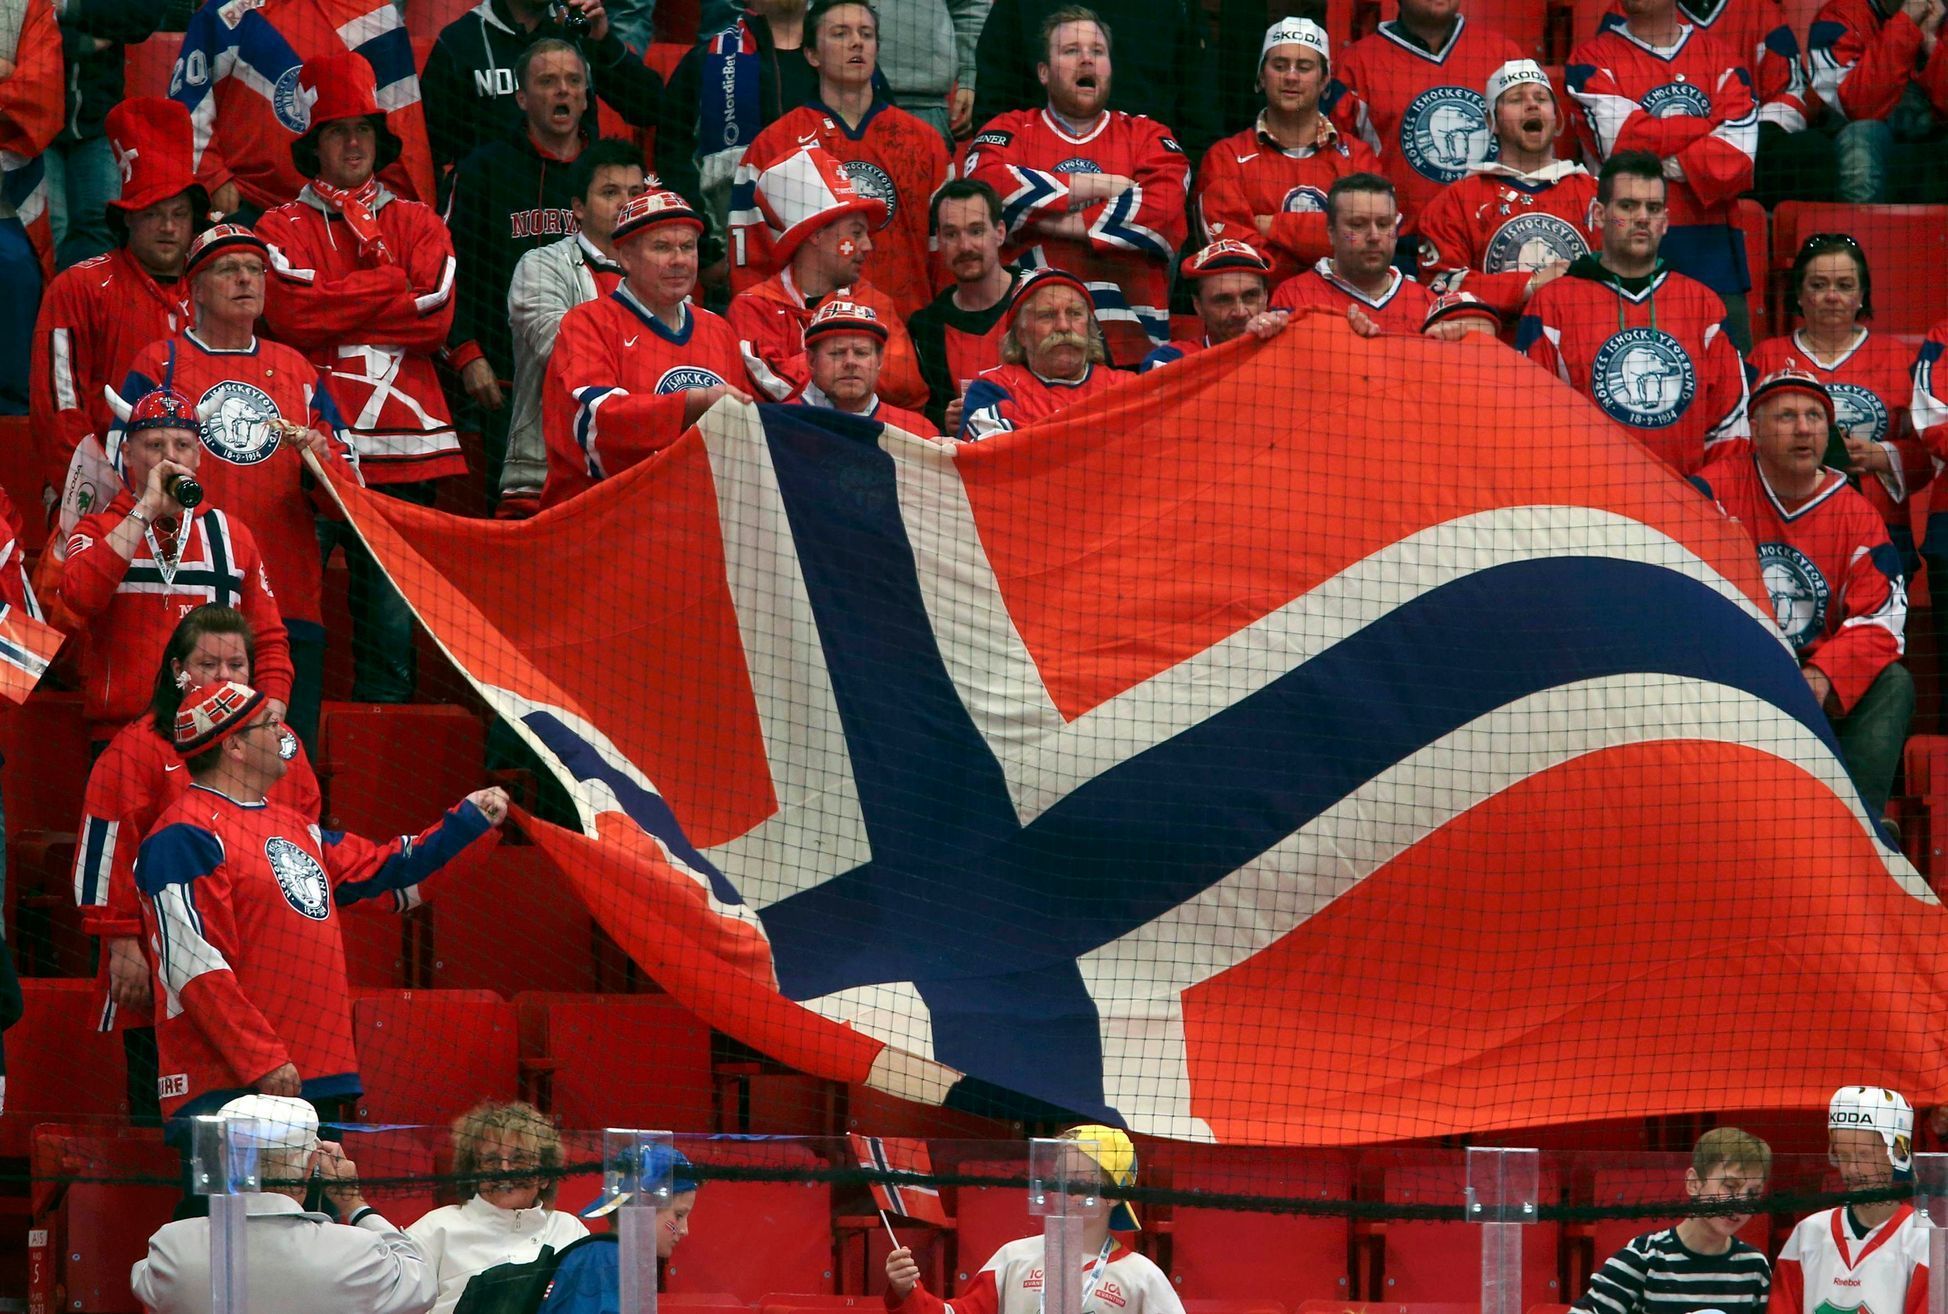 Hokej, MS 2013: Česko - Norsko: norská vlajka